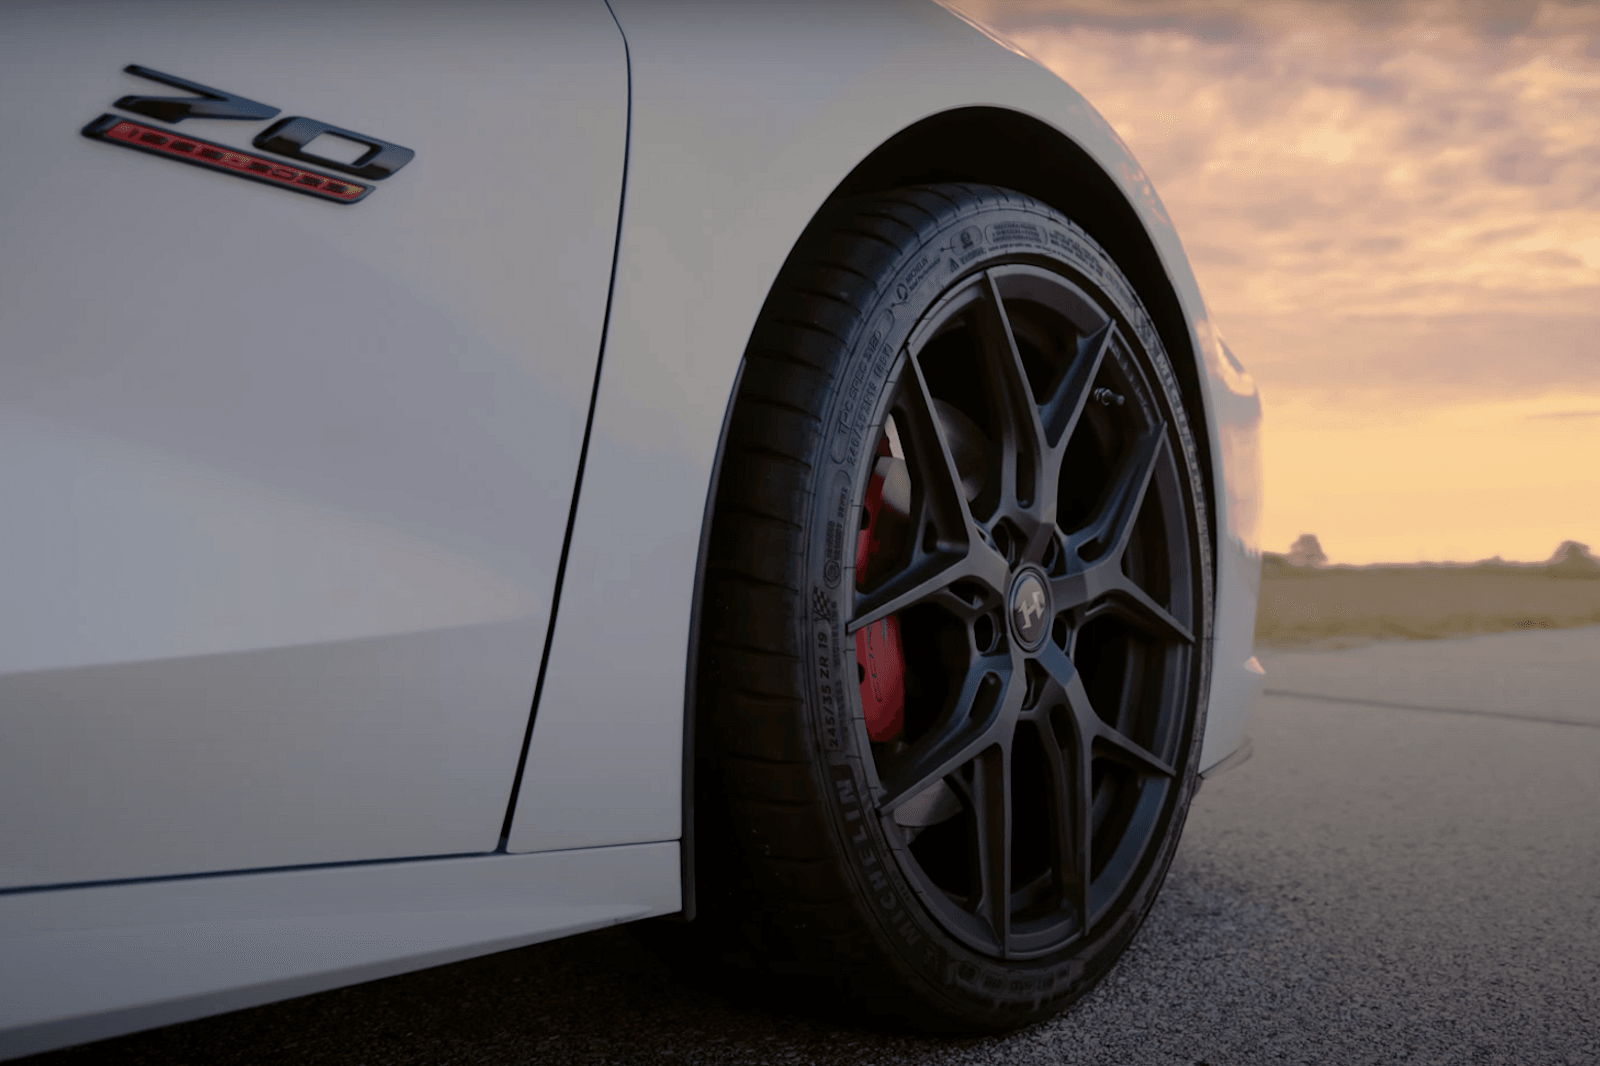 Техасский тюнер рекламирует свой H700 70th Anniversary Chevy Corvette как коллекционную модель, окрашенную исключительно в покрытие White Pearl Metallic или Carbon Flash Metallic, дополненные гоночными полосами. И хотя в комплект поставки 70th Annive